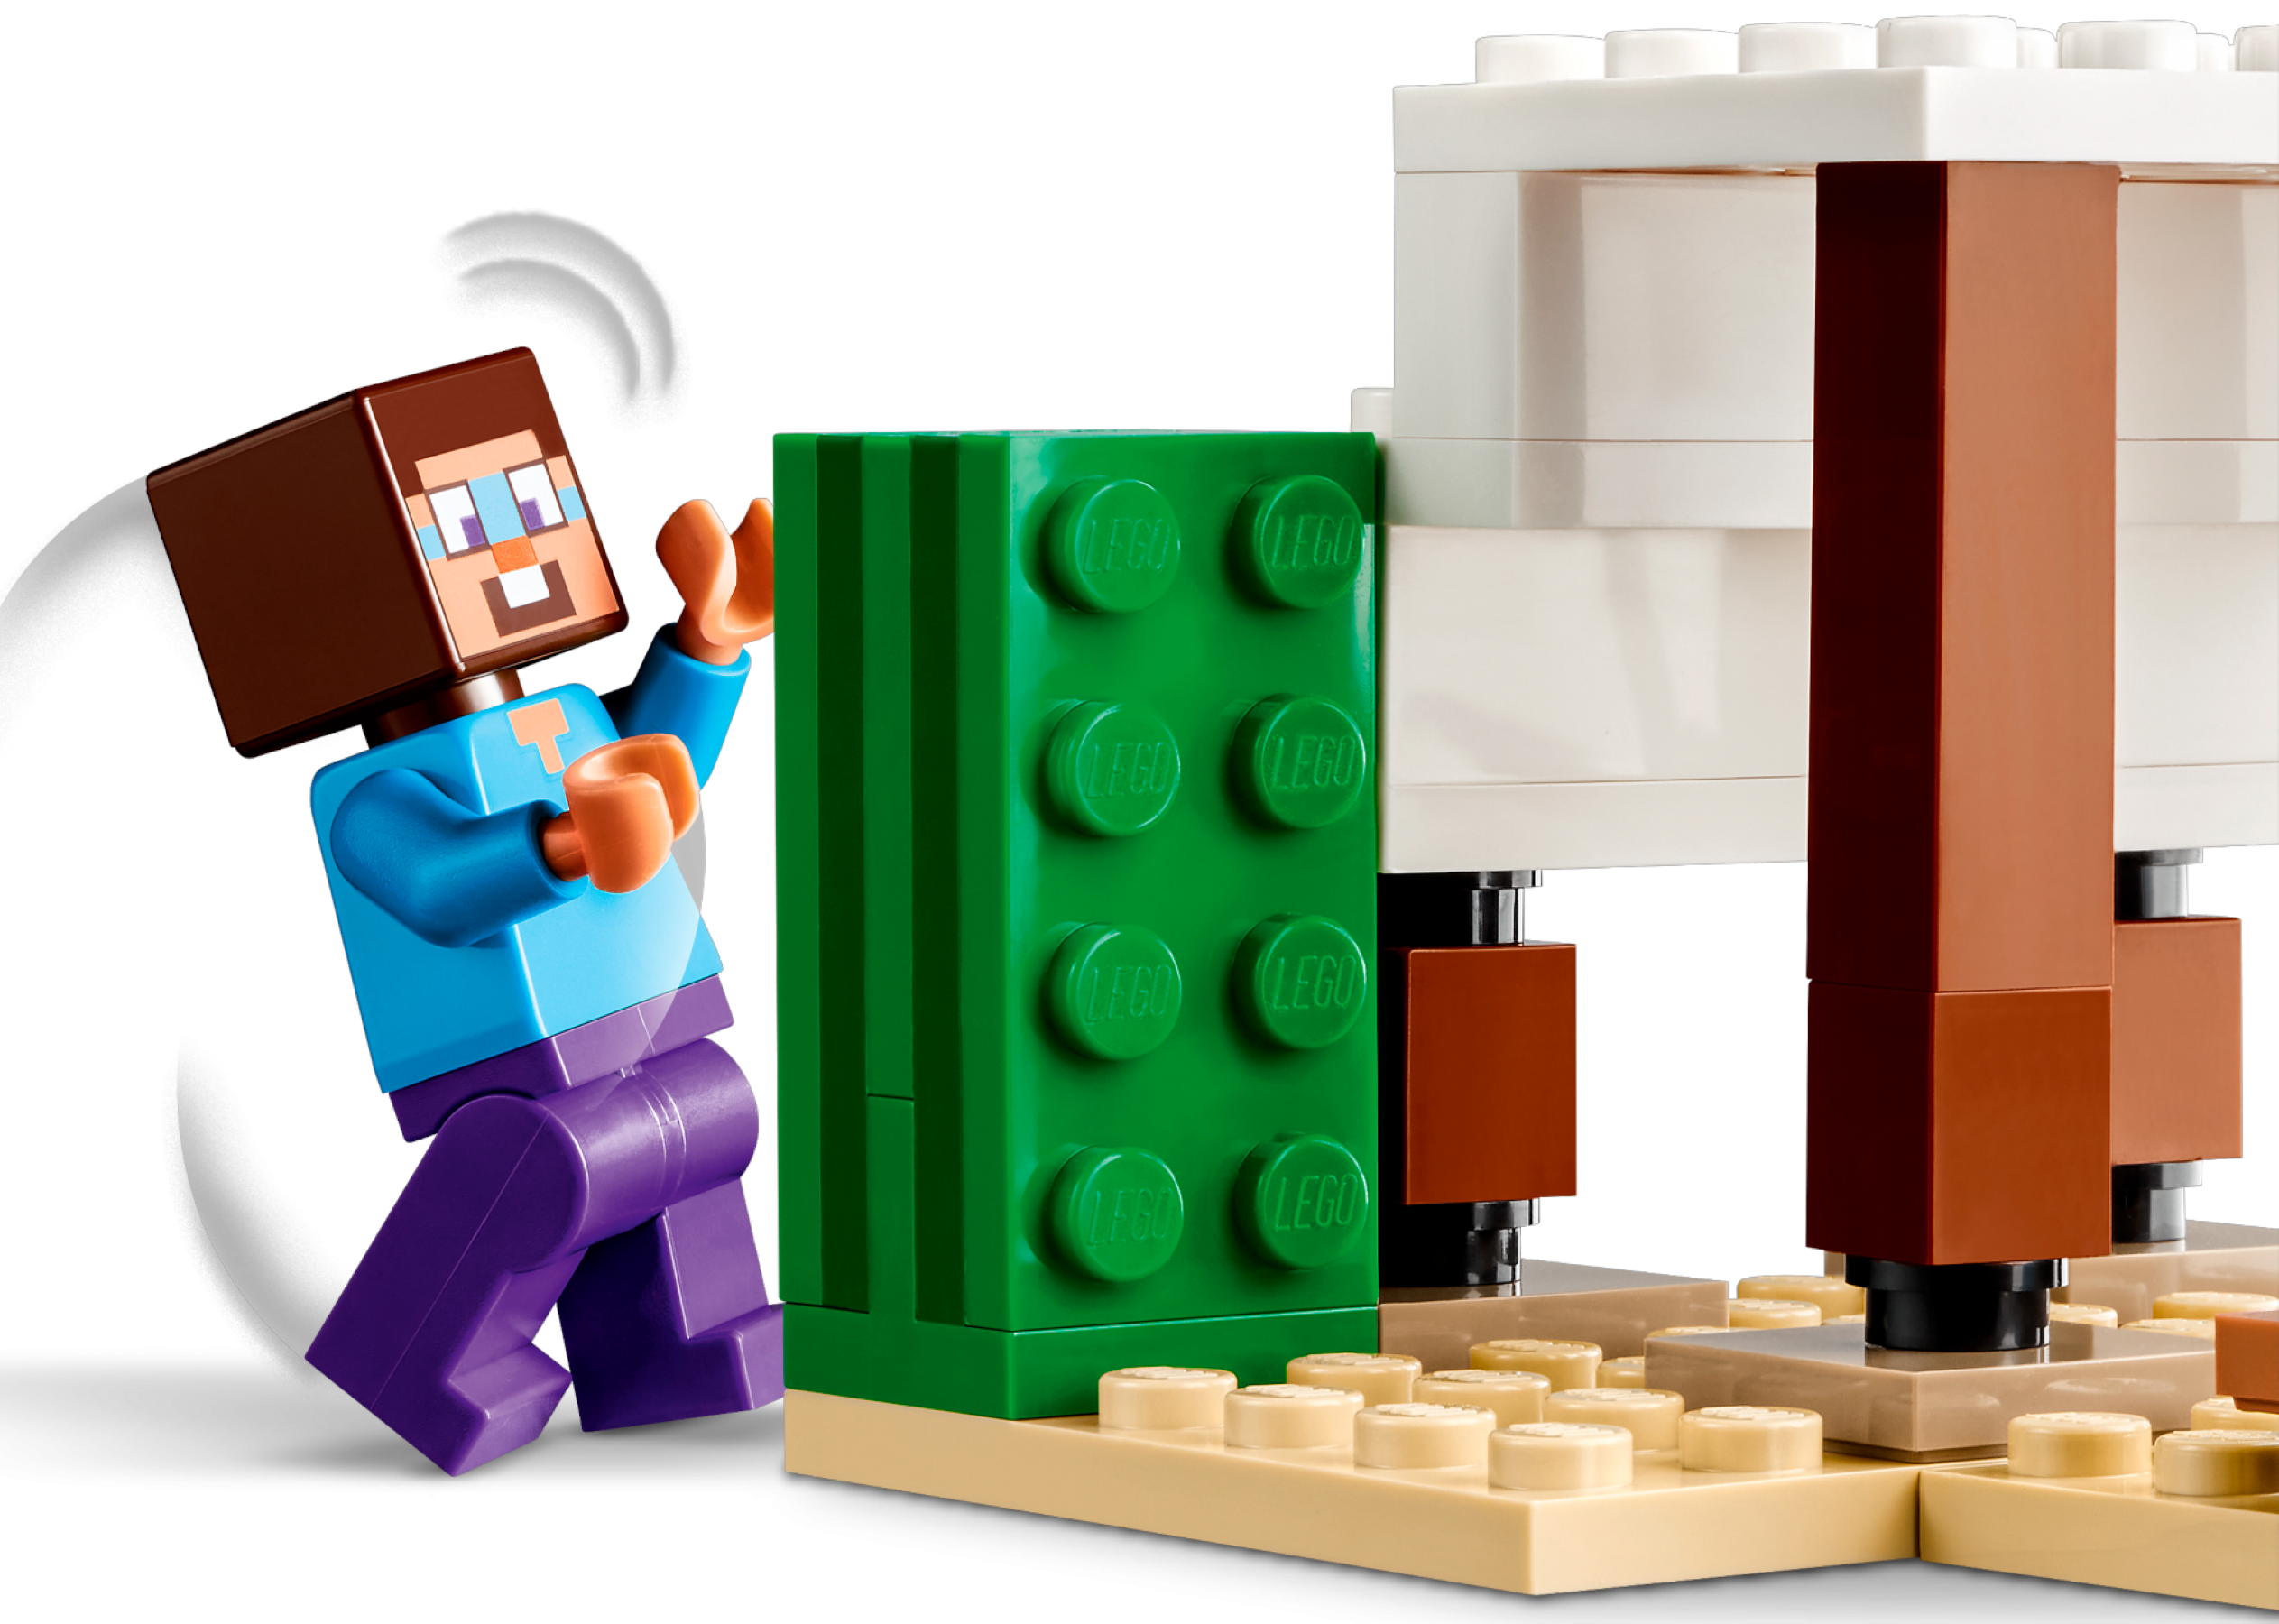 Đồ Chơi Lắp Ráp Chuyến Thám Hiểm Đền Thờ Sa Mạc Của Steve - Steve's Desert Expedition - Lego Minecraft 21251 (75 Mảnh Ghép)